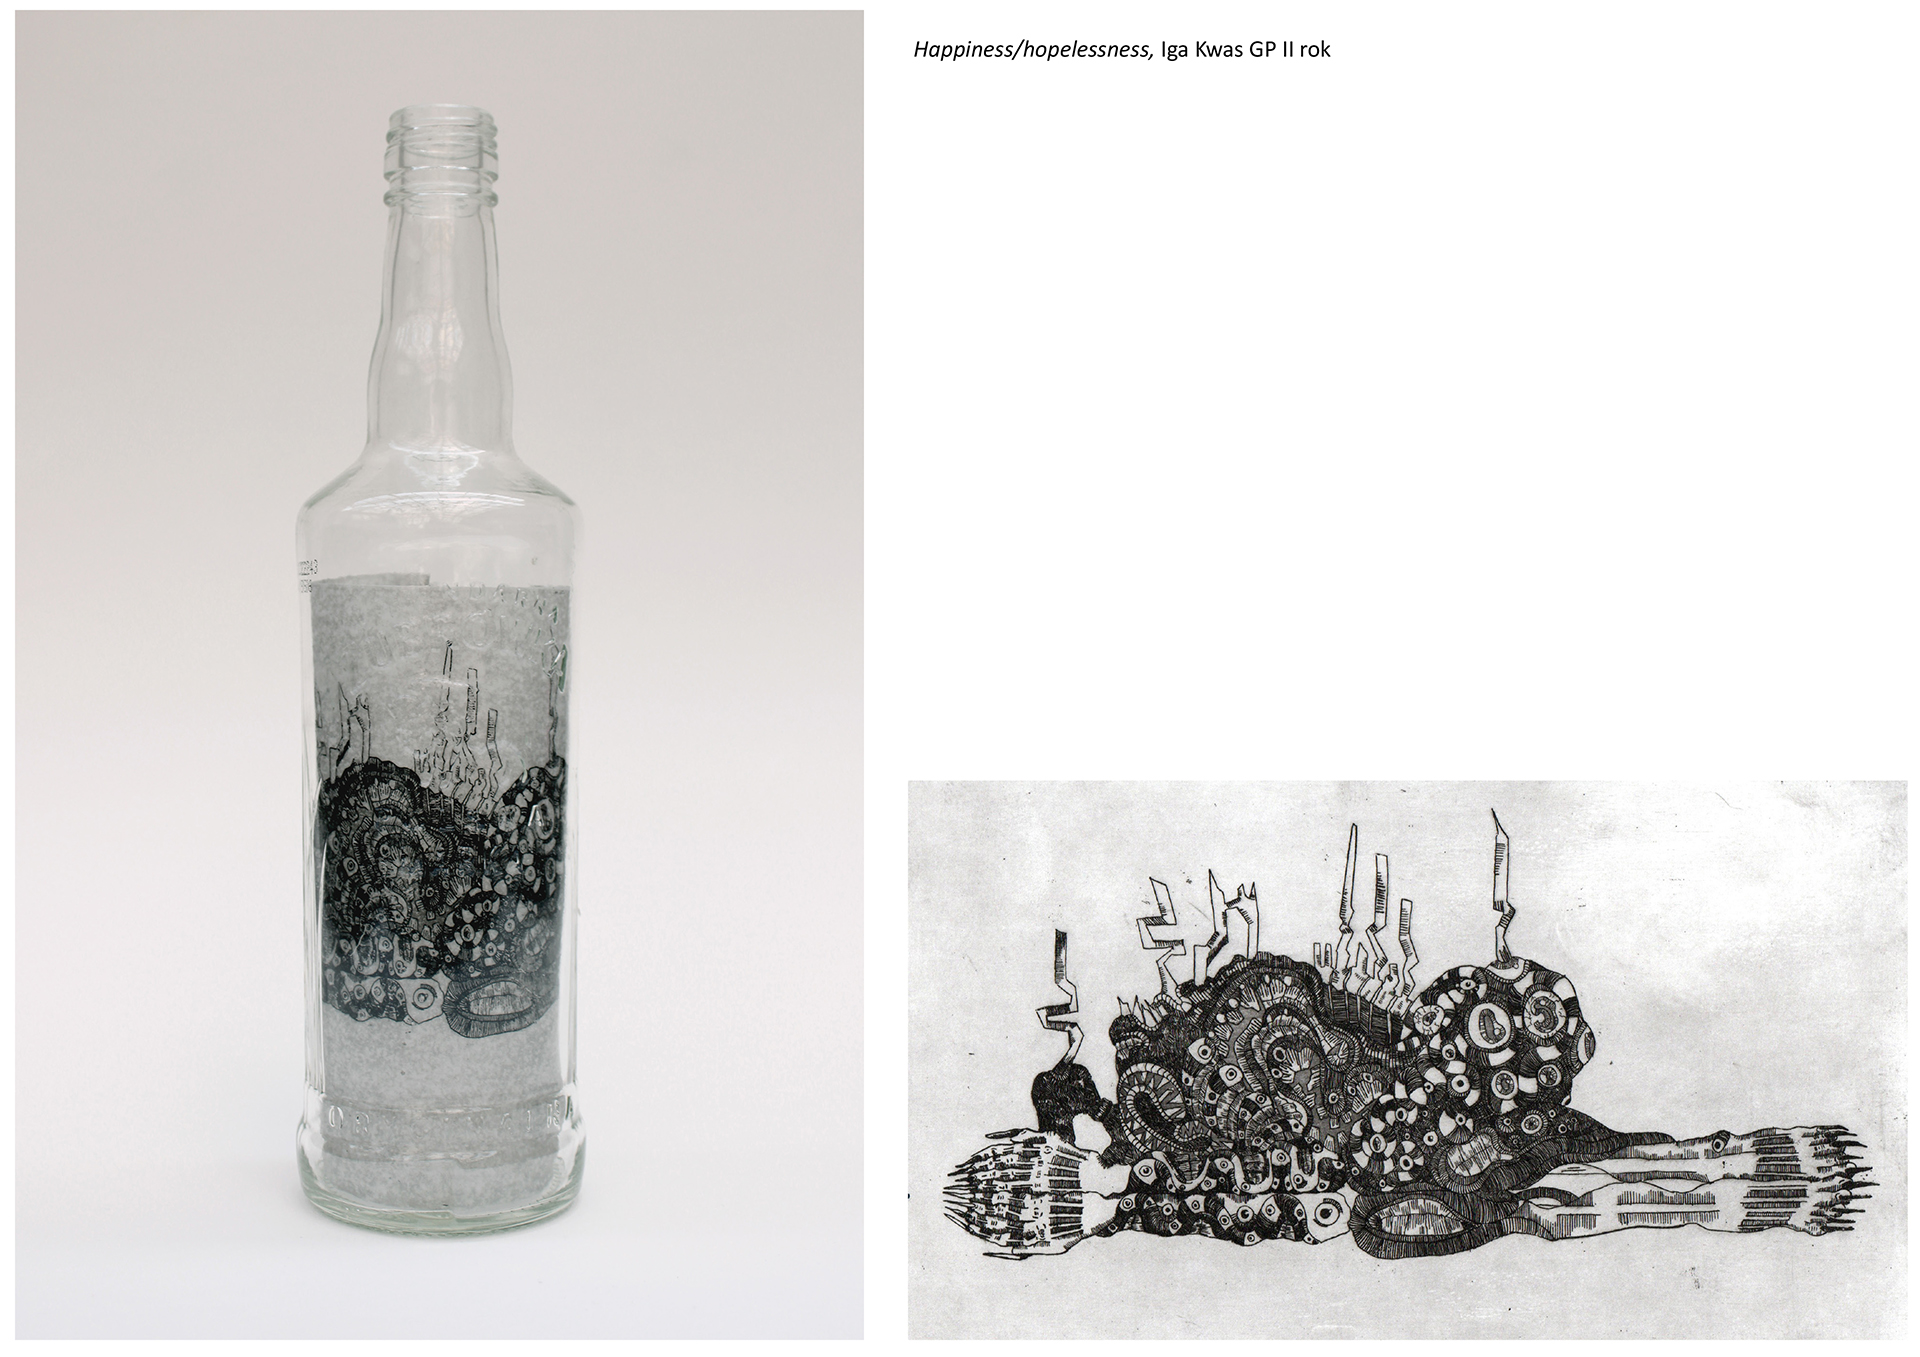  Tytuł: Happiness/hopelessness. Autorka: Iga Kwas. Dwie fotografie. Od lewej szklana butelka po wódce z grafiką nadrukowaną na papierze w środku. Po prawej: grafika ze środka butelki w czerni i bieli przedstawiająca zdeformowaną postać ludzką. 